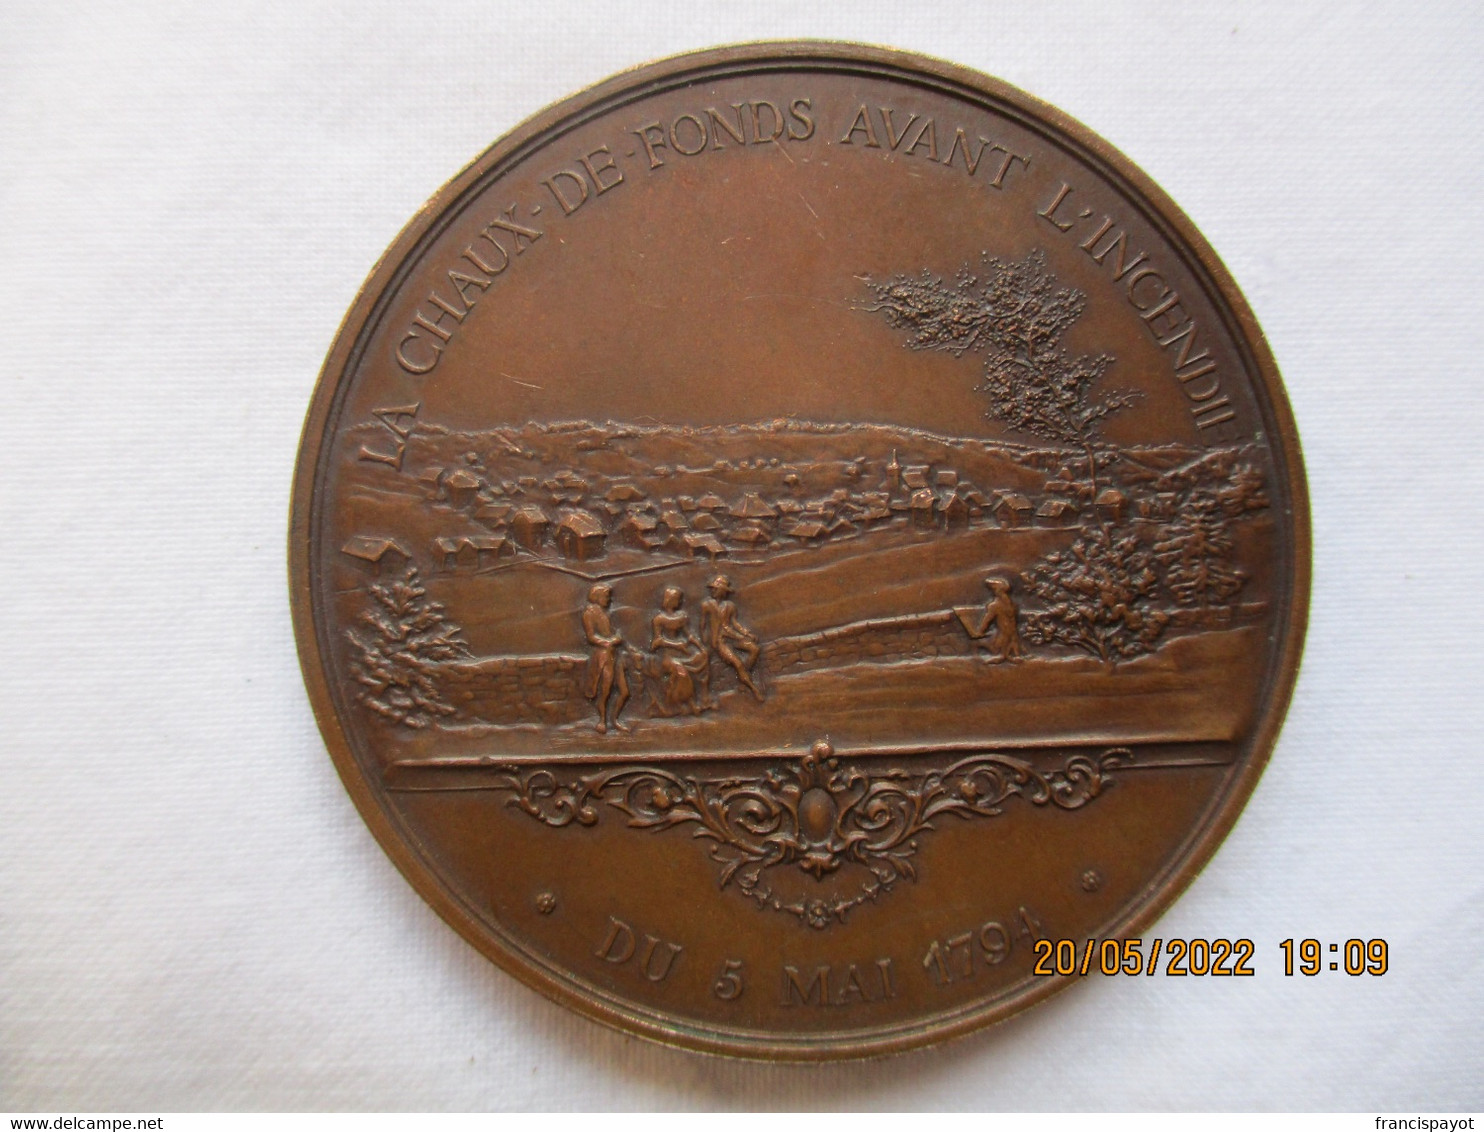 Suisse: Médaille Honneur Et Travail, Centenaire De L'incendie De La Chaux-de-Fonds 1894 - Professionals / Firms